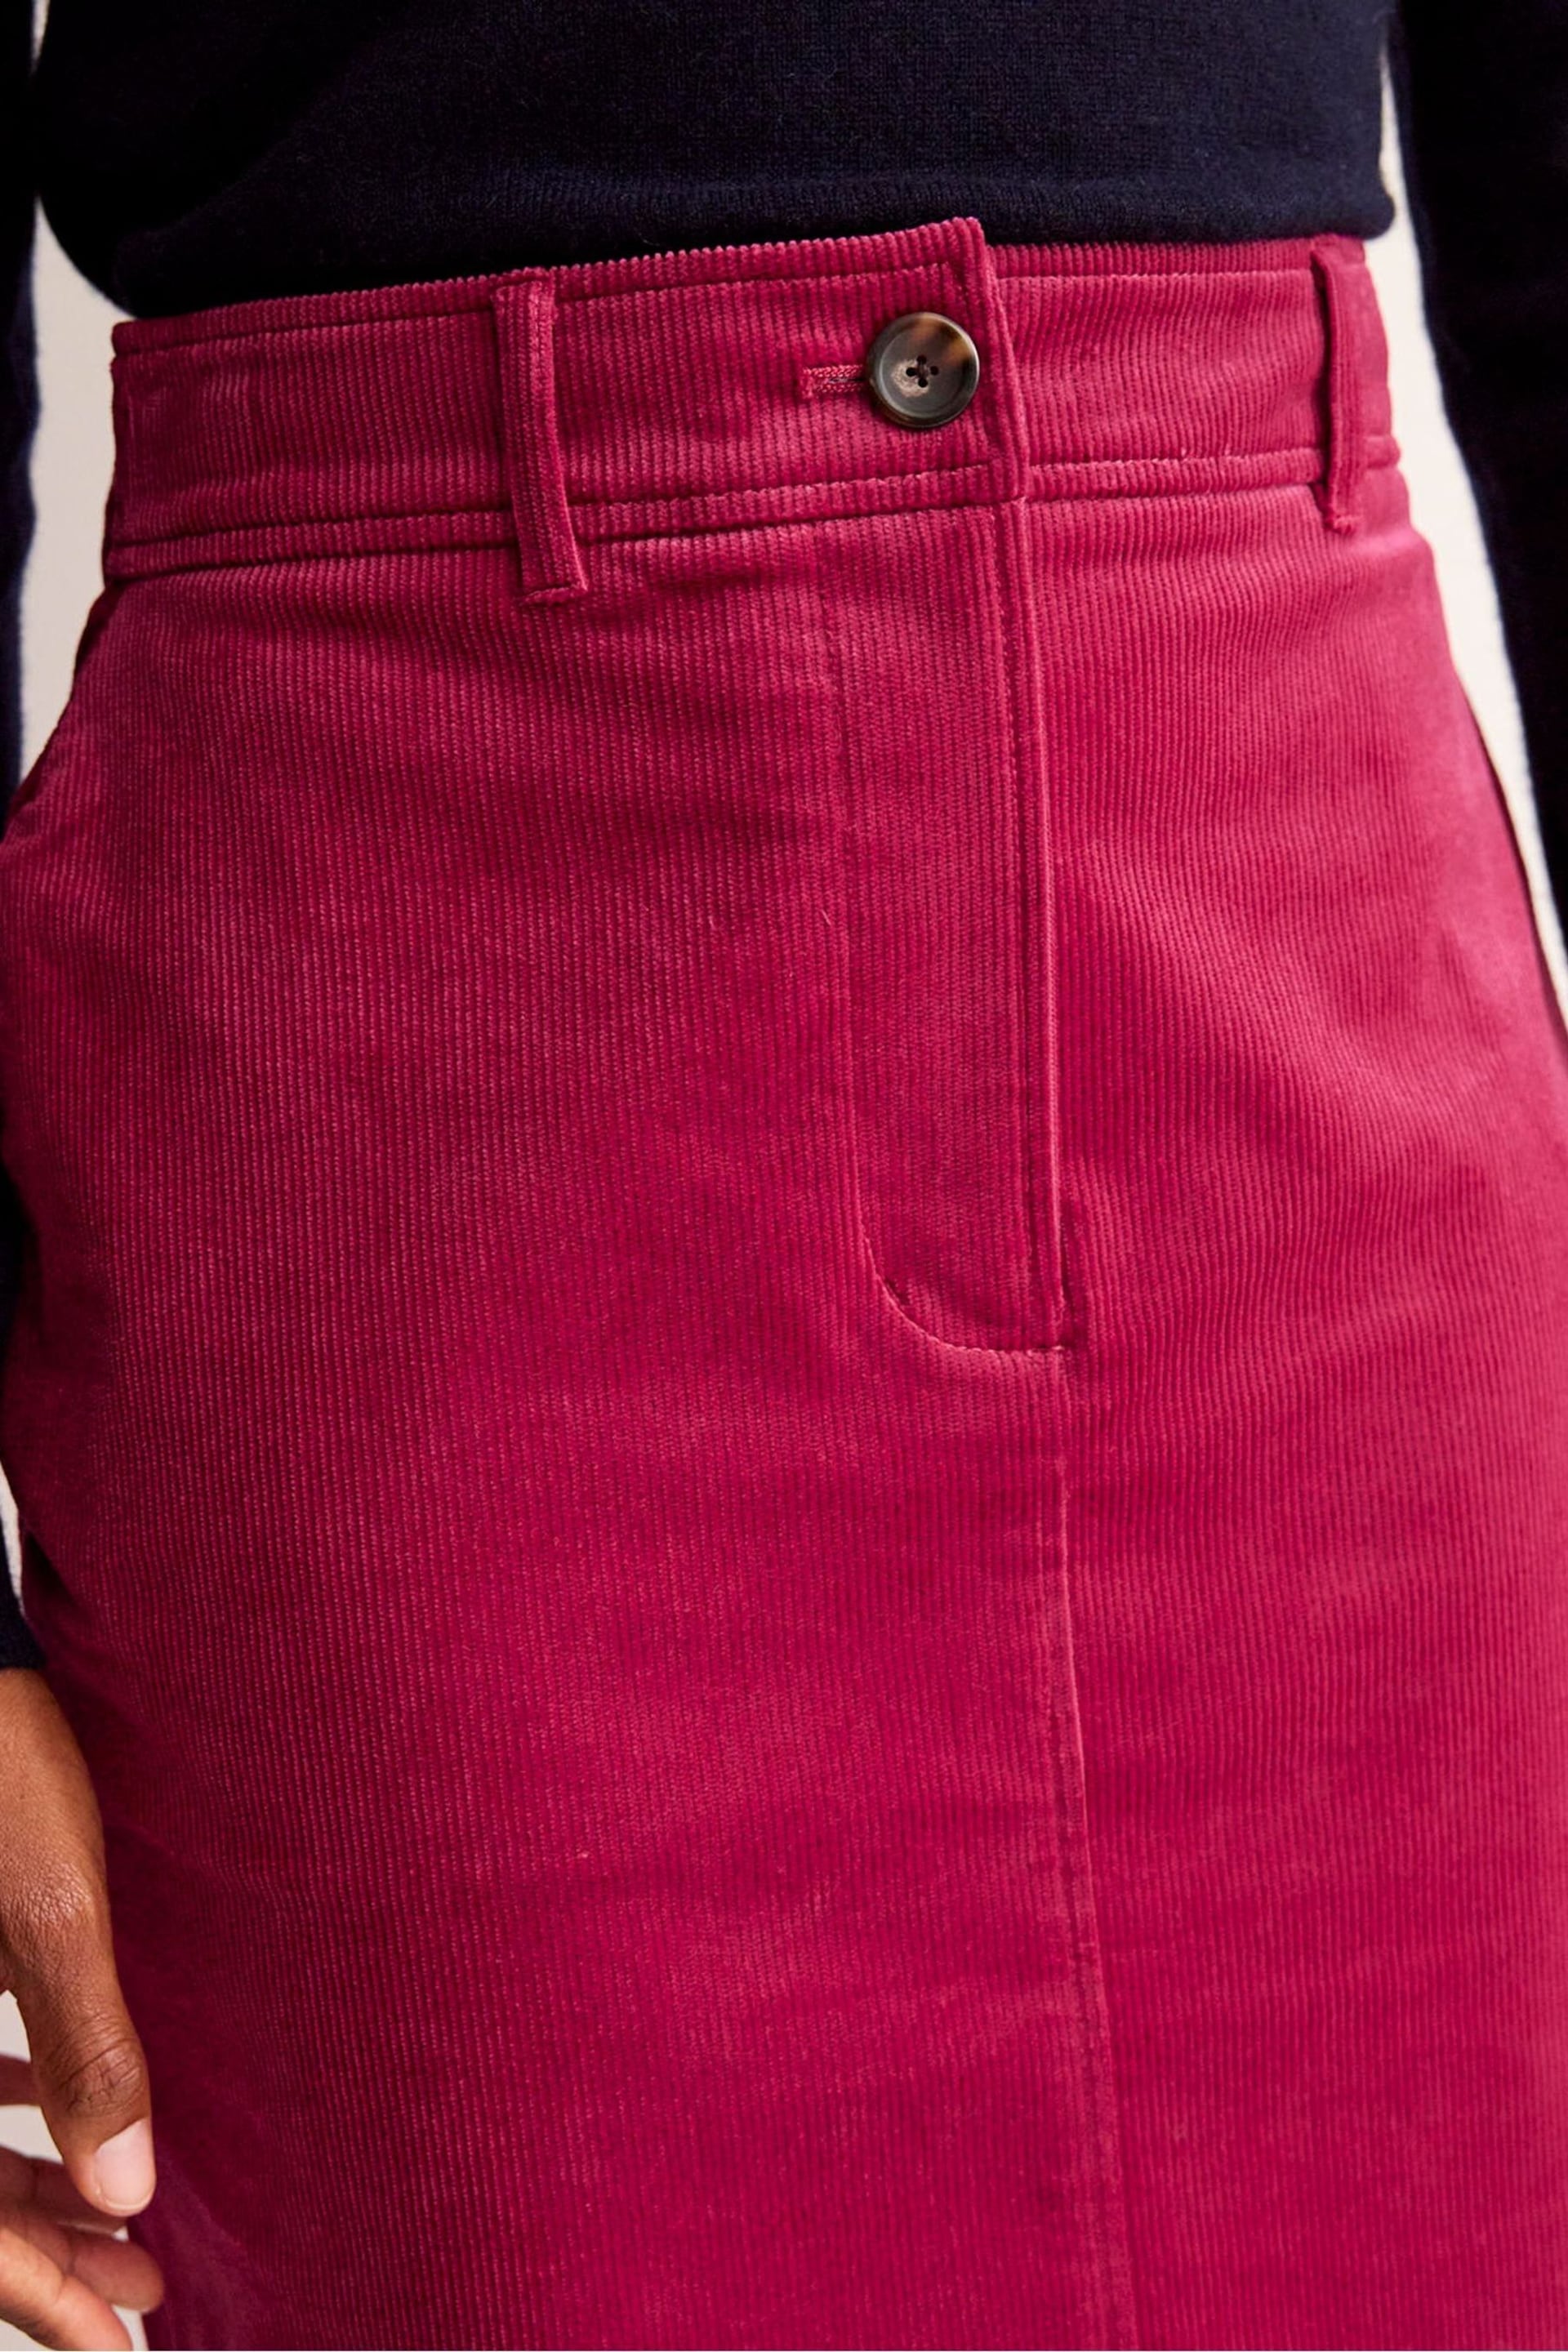 Boden Red Margot Cord Midi Skirt - Image 5 of 6